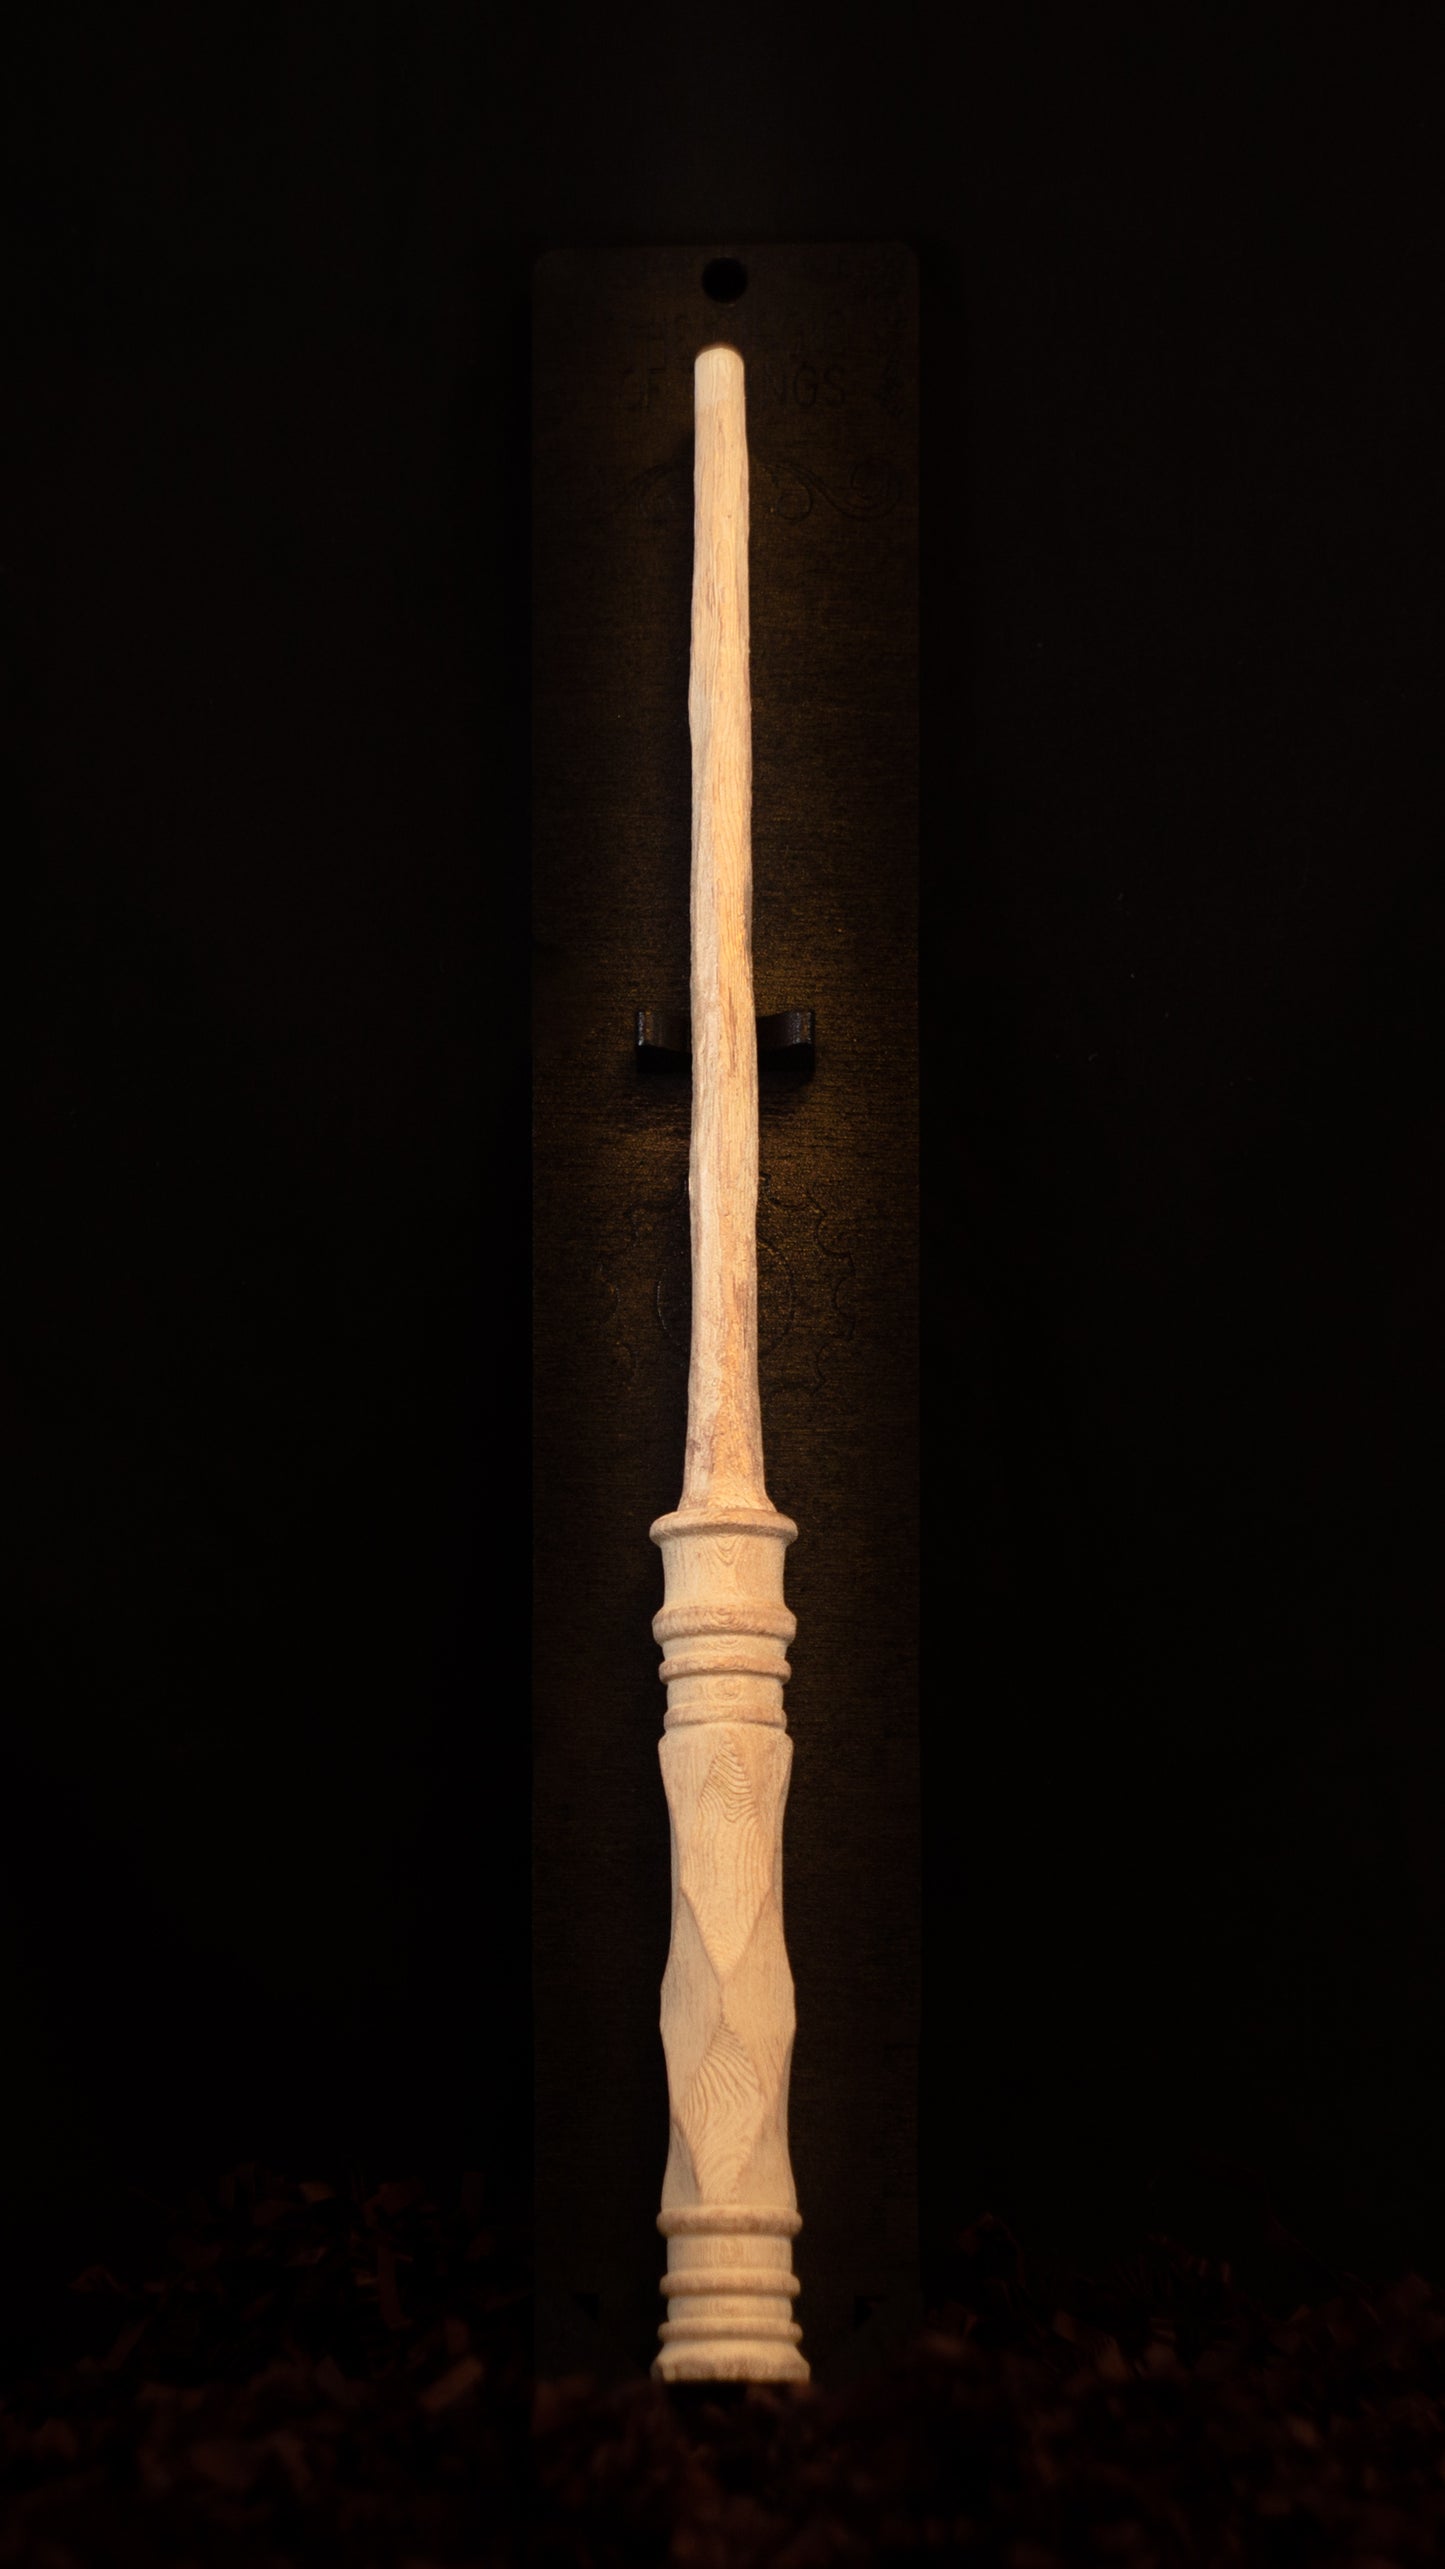 Custom Wand | Light Magic | Non-Illuminated - The Cauldron Shop